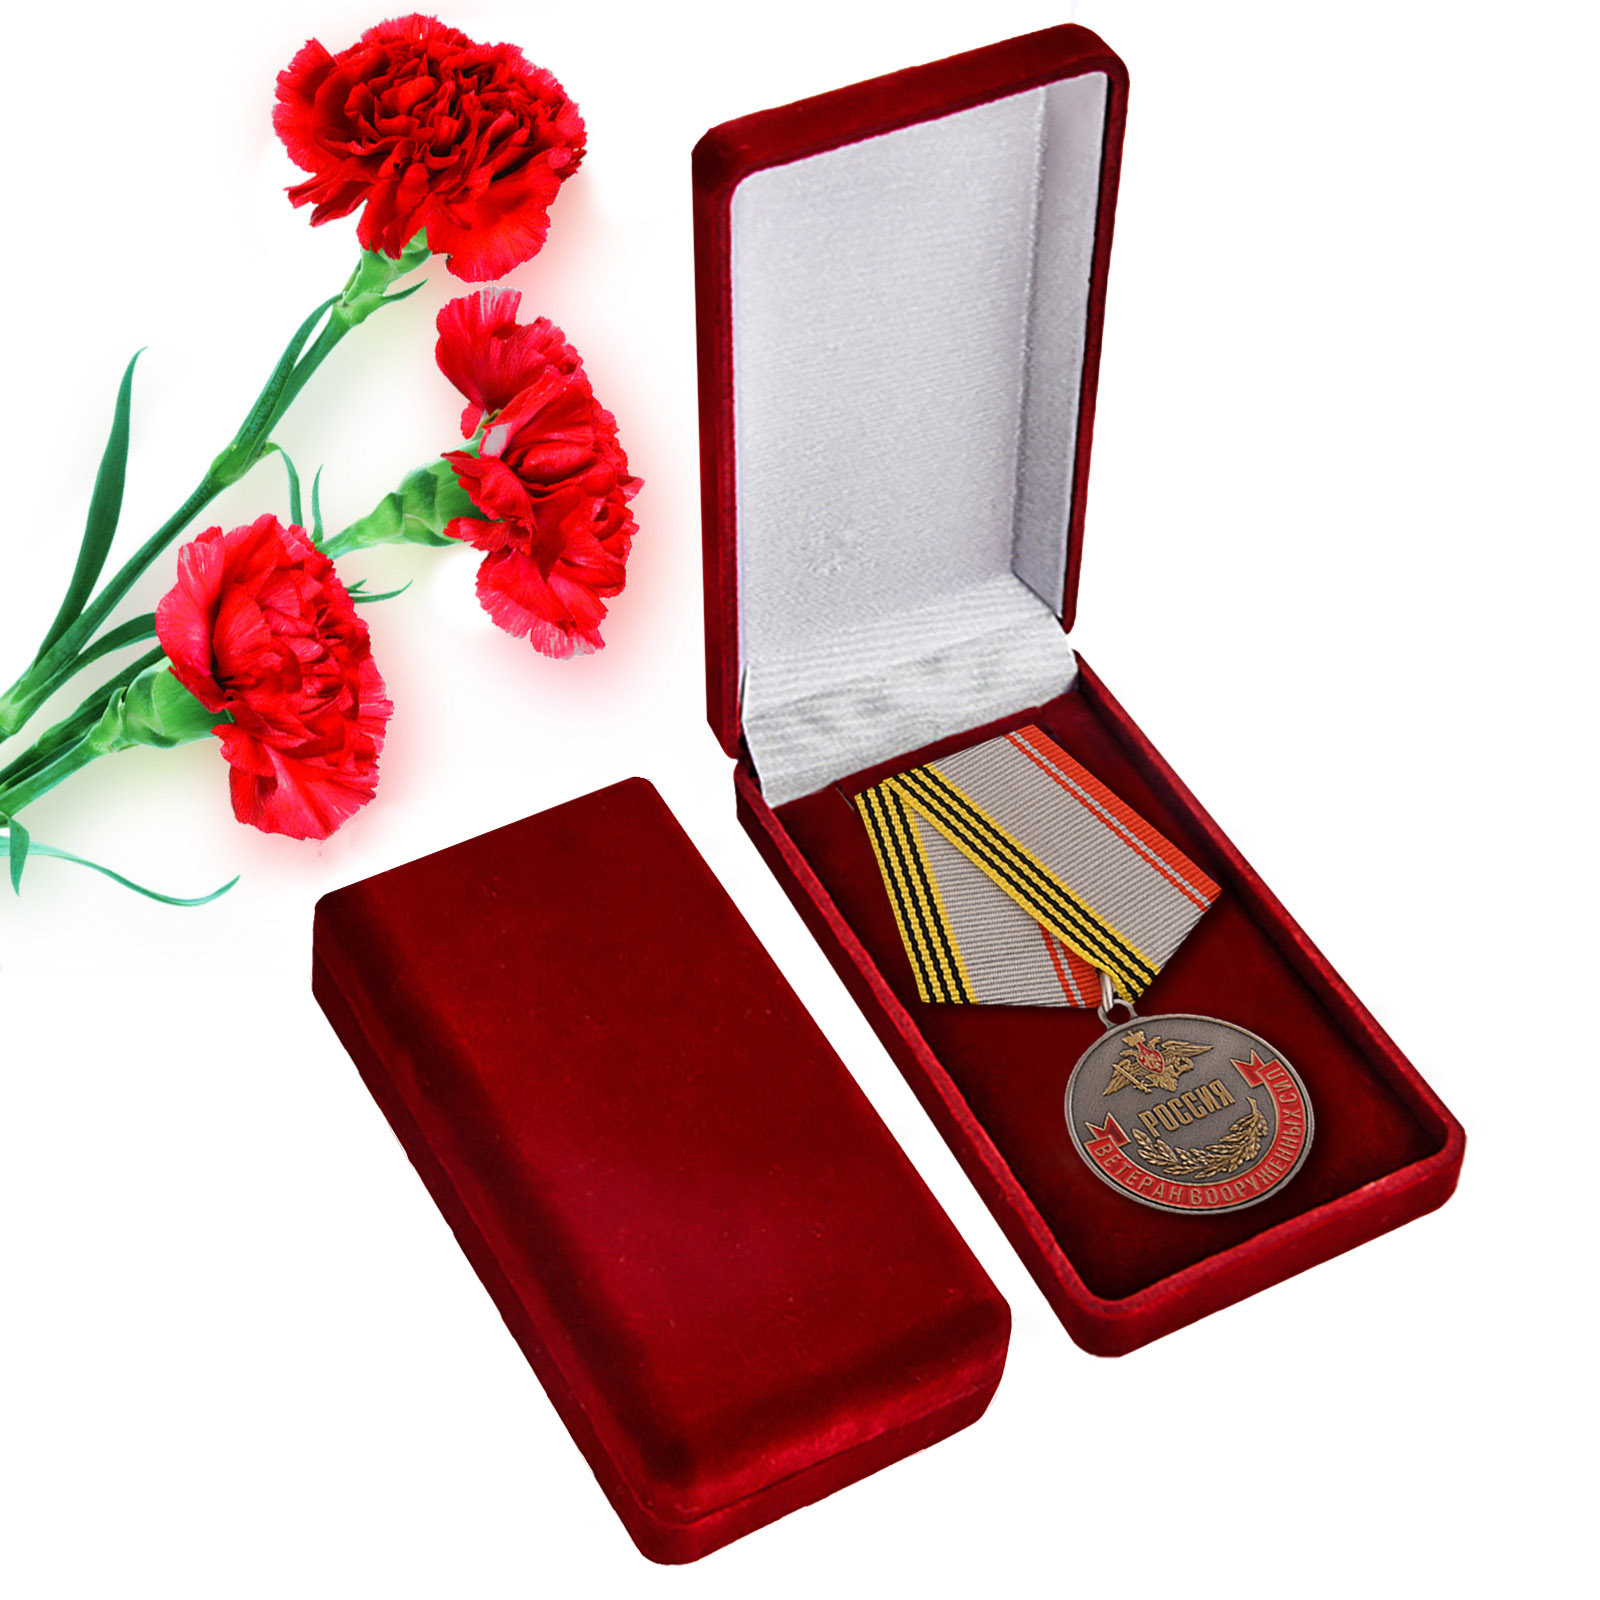 Медаль "Ветеран Вооруженных Сил Российской Федерации"